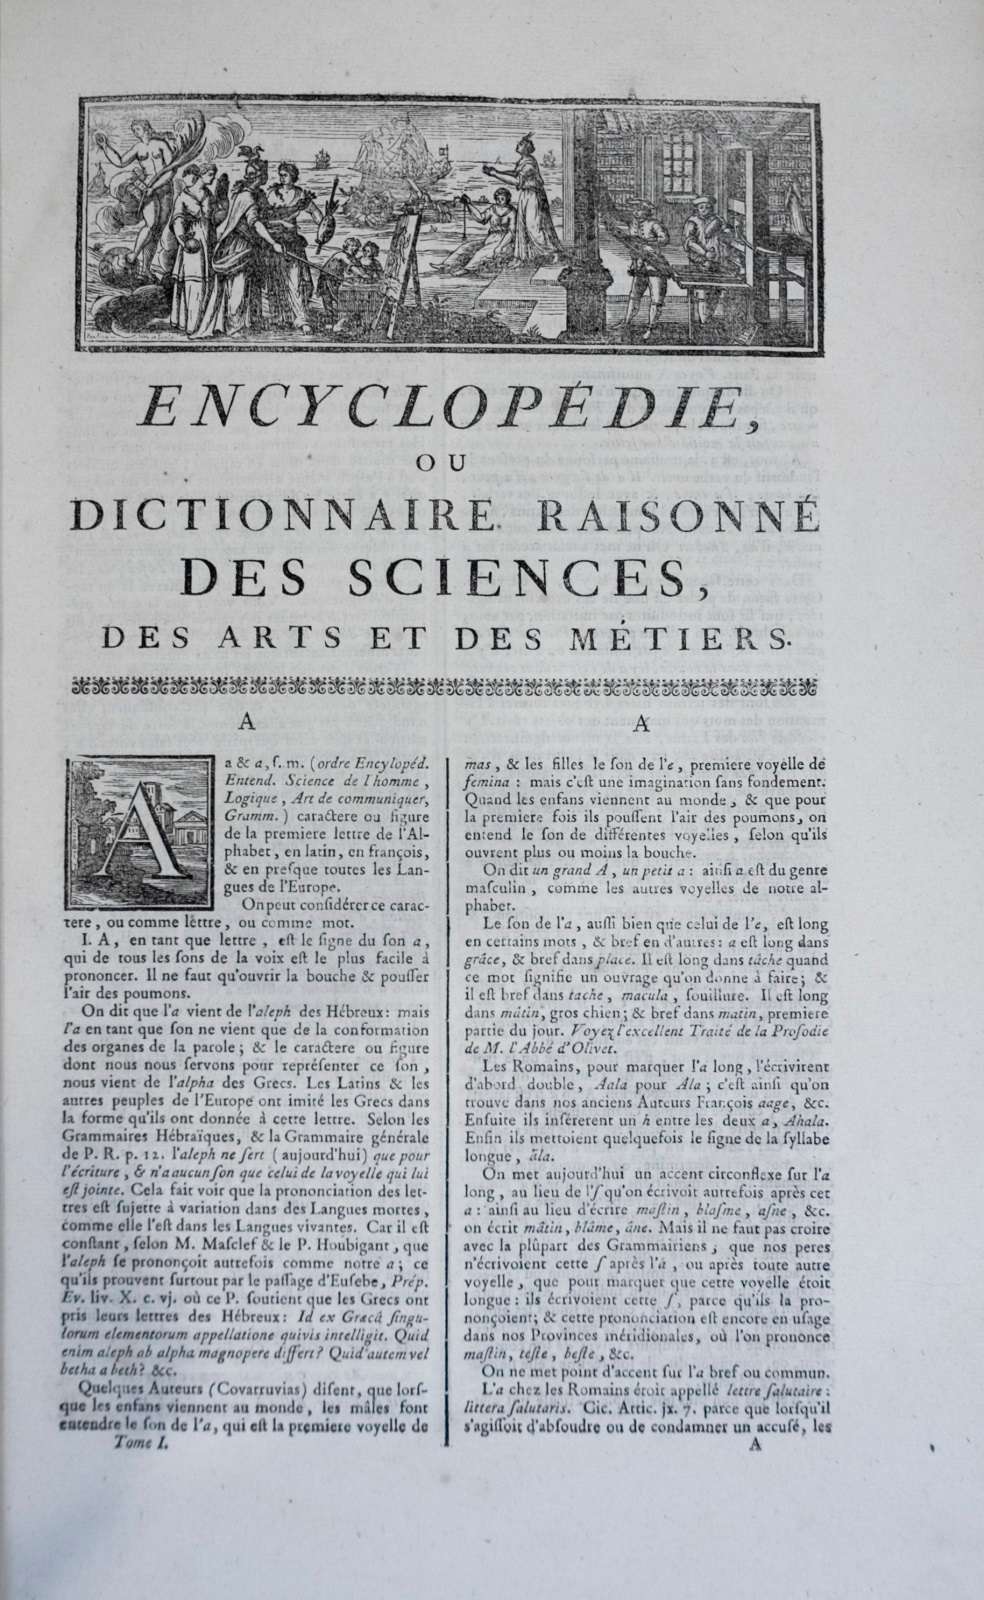 L'<em>Encyclopédie</em>, volume I, première page « A » ; contributeurs : Diderot et d'Alembert ; éditeurs : Briasson, David, Le Breton, Faulche, entre 1751 et 1765. © Wikimedia Commons, domaine public